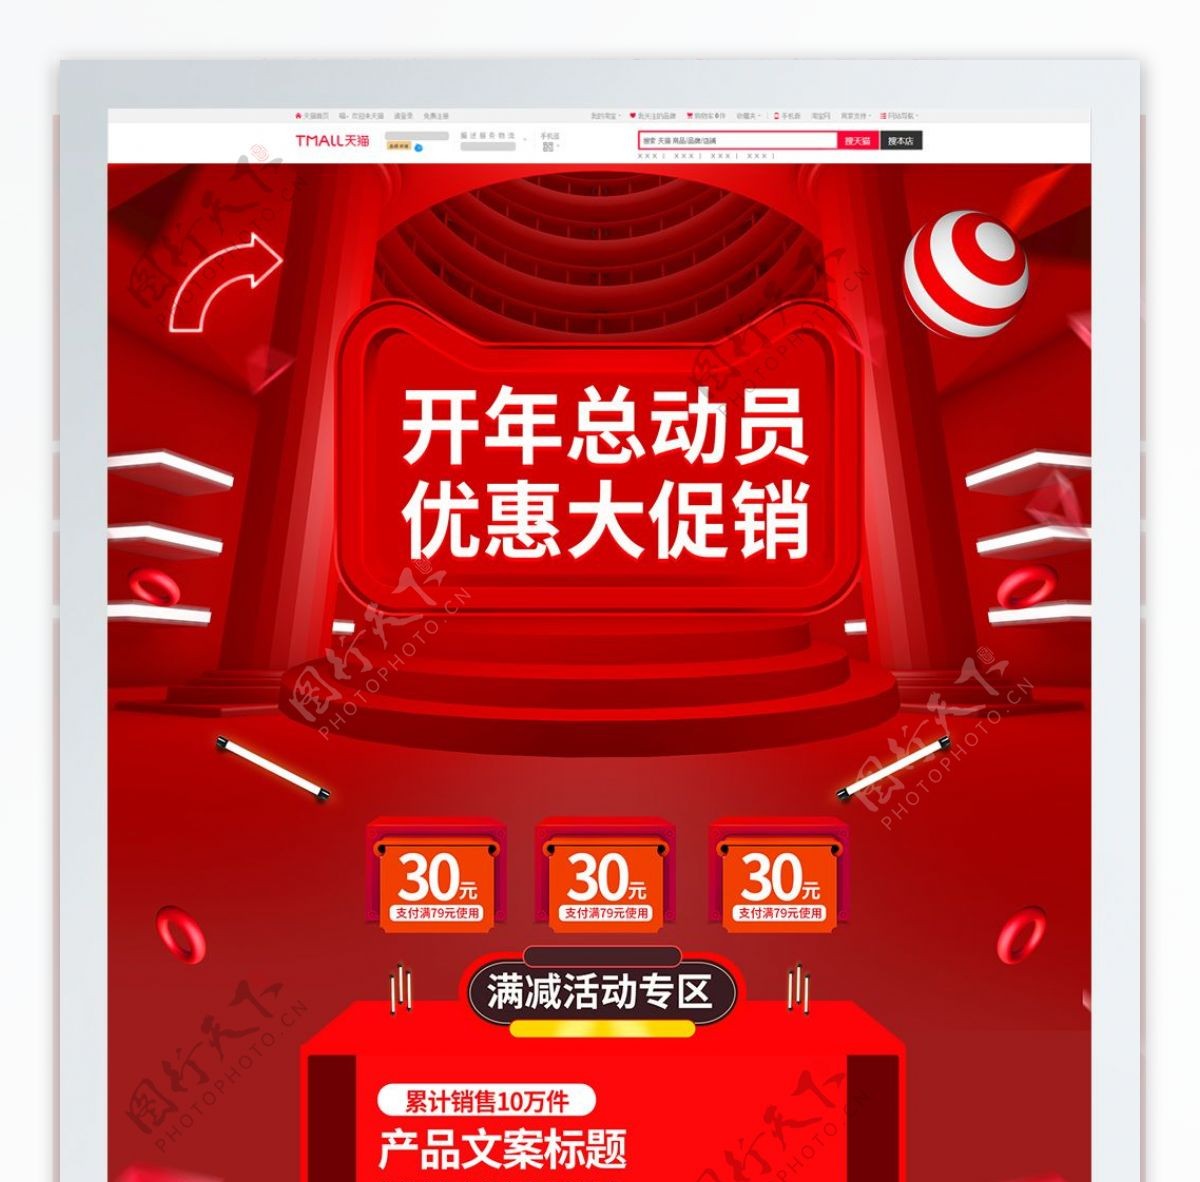 红色炫酷微立体开年总动员活动促销电商首页